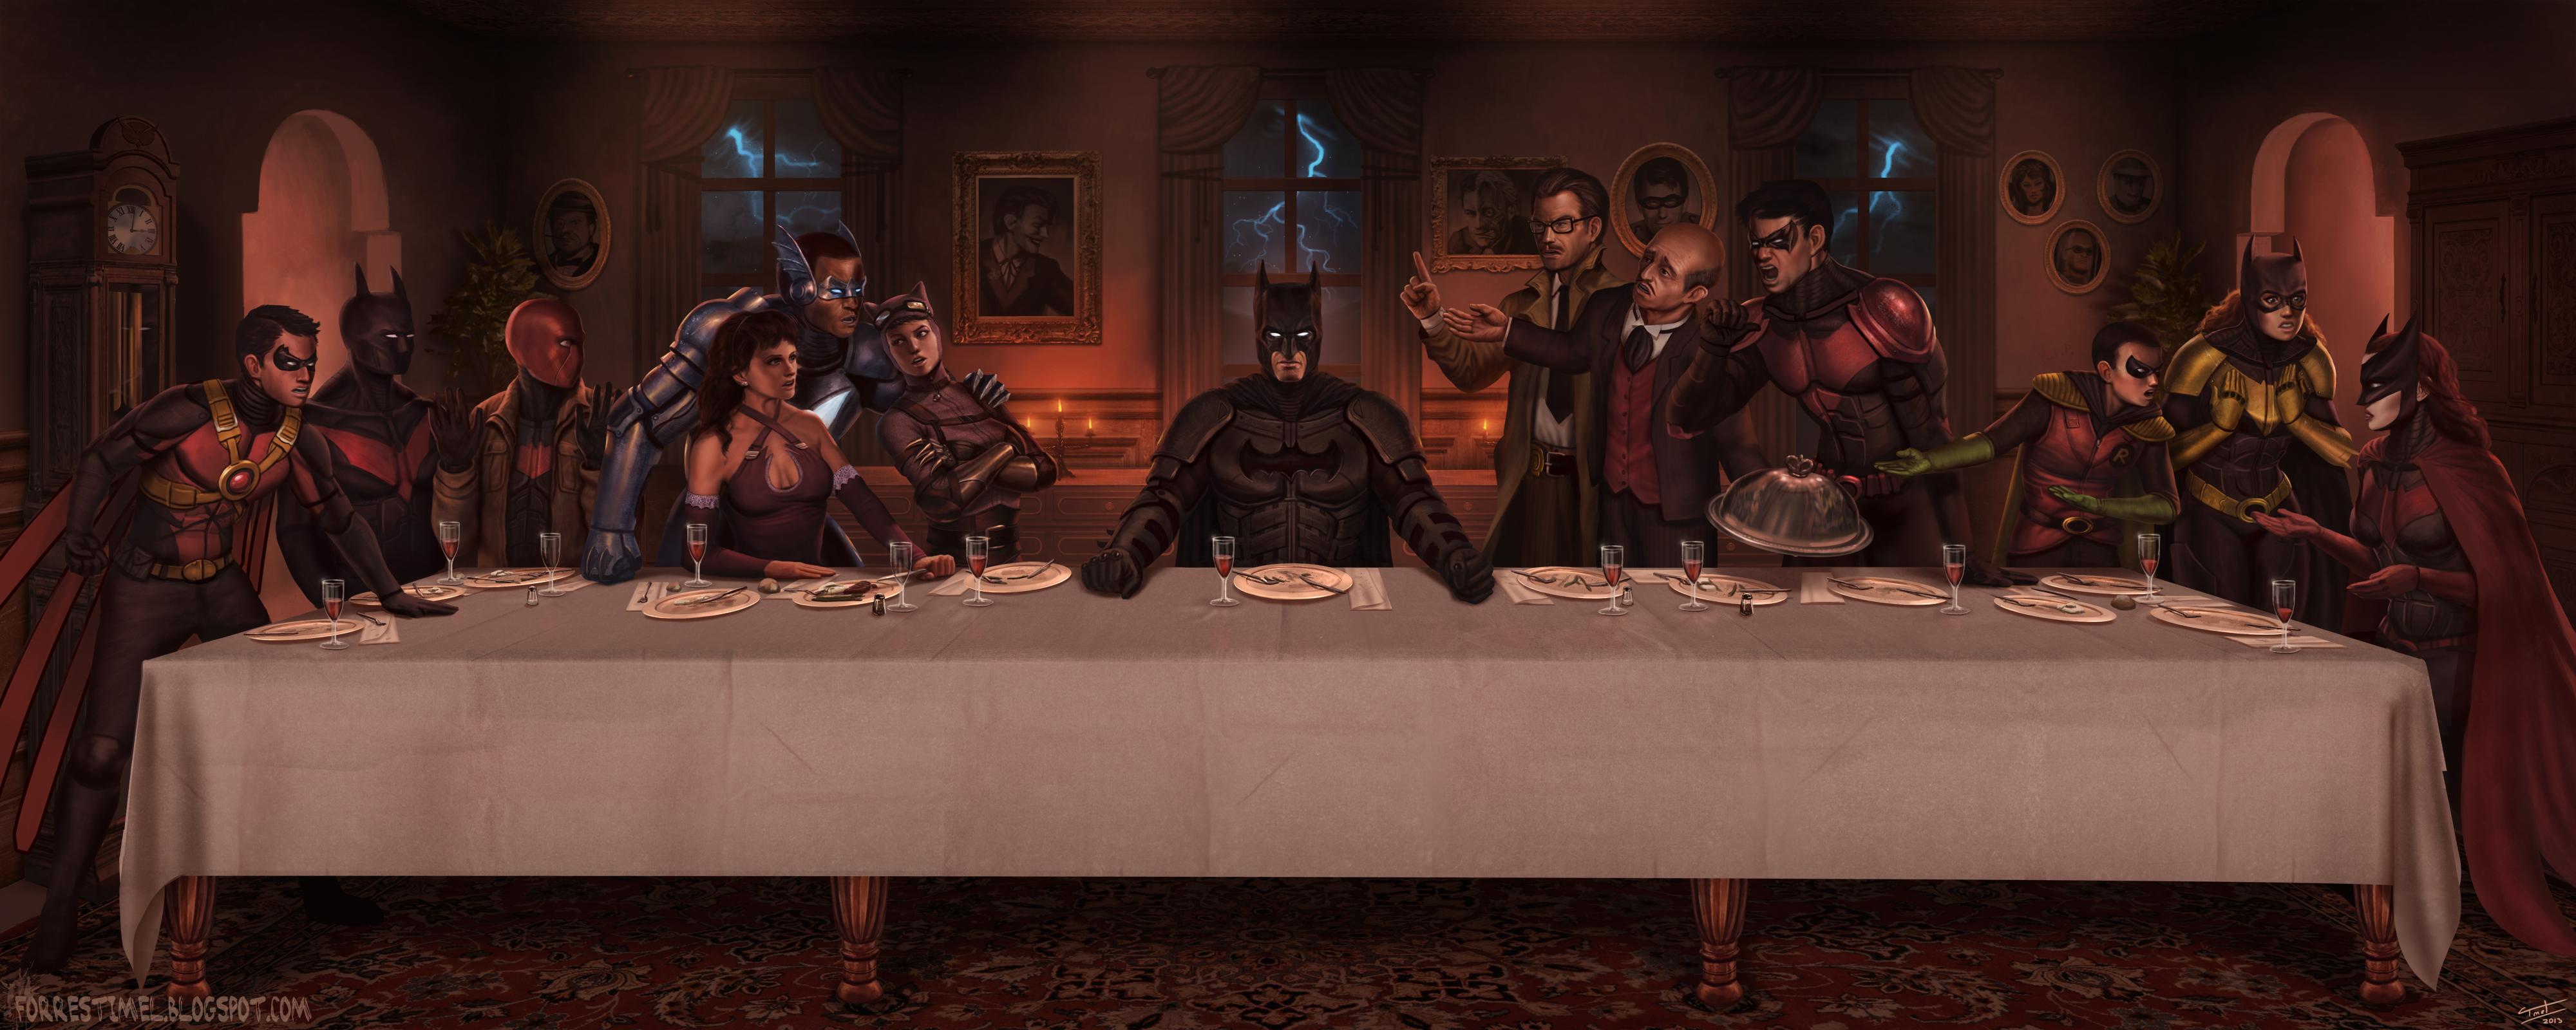 The Last Supper Of Batman - Last Supper Batman , HD Wallpaper & Backgrounds